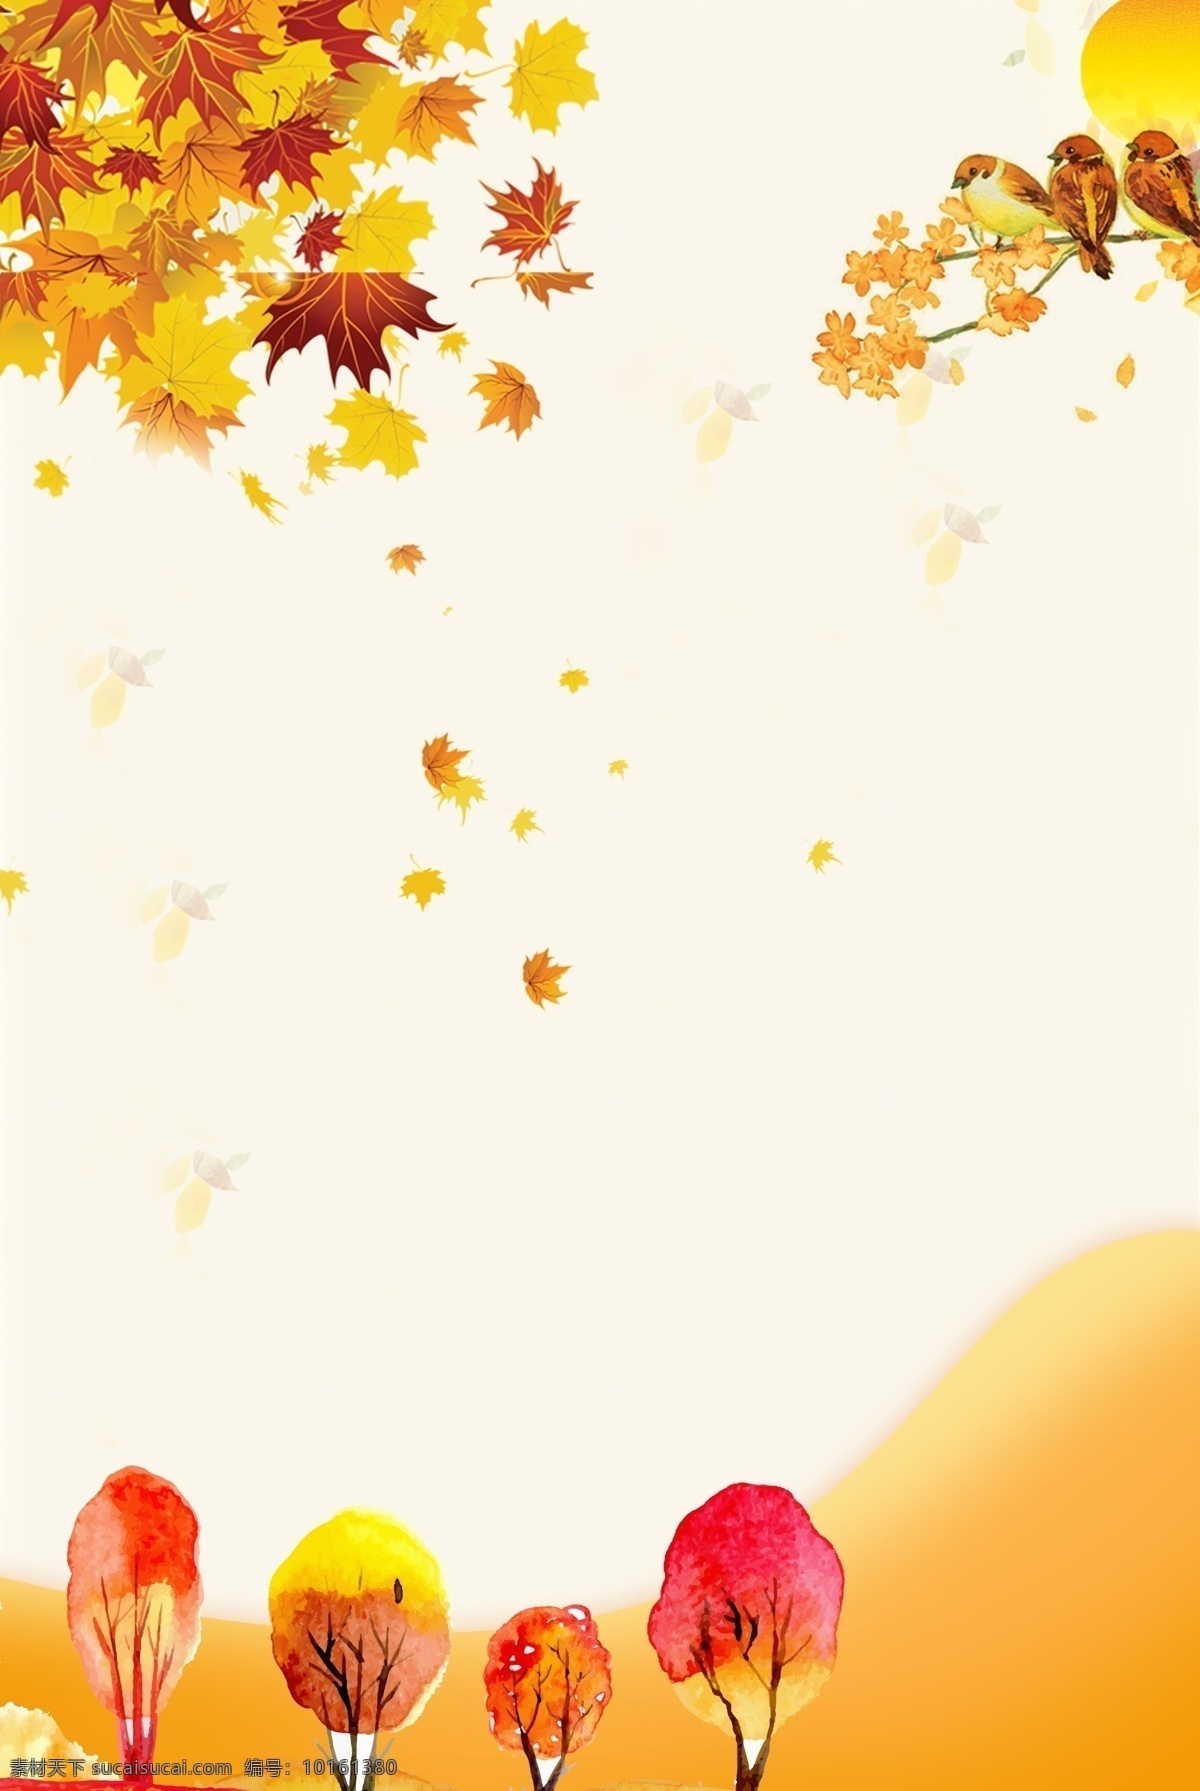 立秋 秋季 落叶 麻雀 海报 秋天 黄叶 树叶 清新 文艺